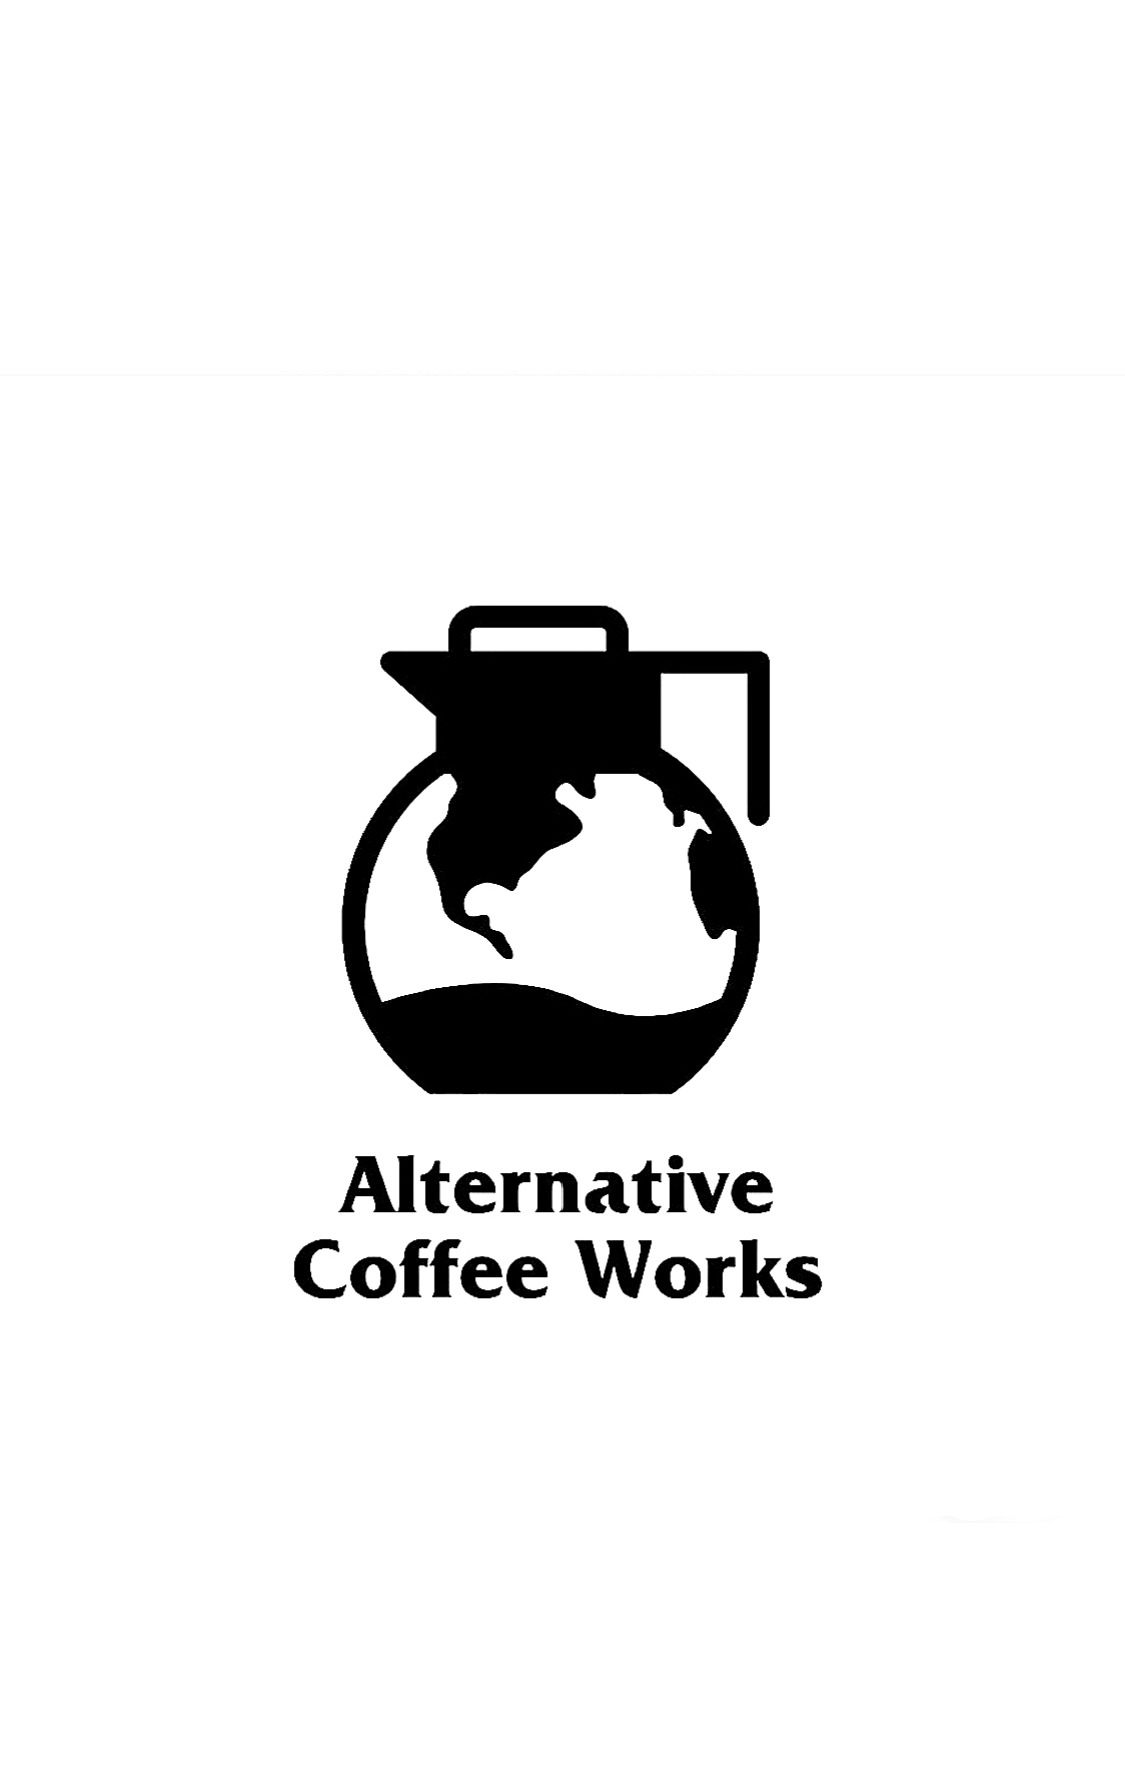 Alternative Coffee Works